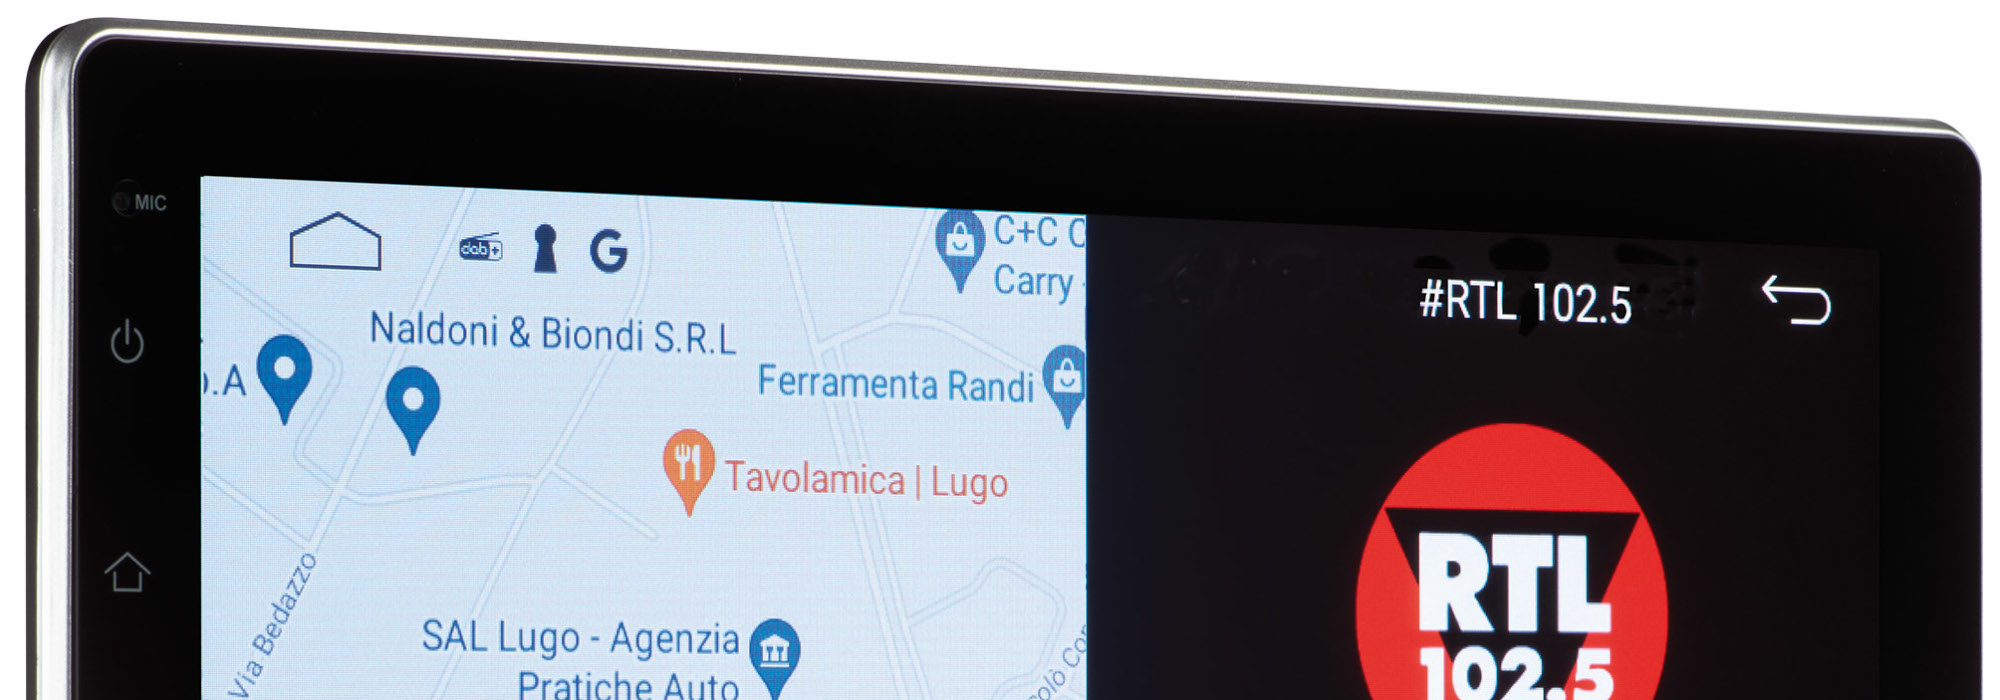 Teleco stellt das neue Multimedia-Navigationssystem mit 10,1-Zoll-Touch-Display vor – Die perfekte Wohnmobil-Navigation